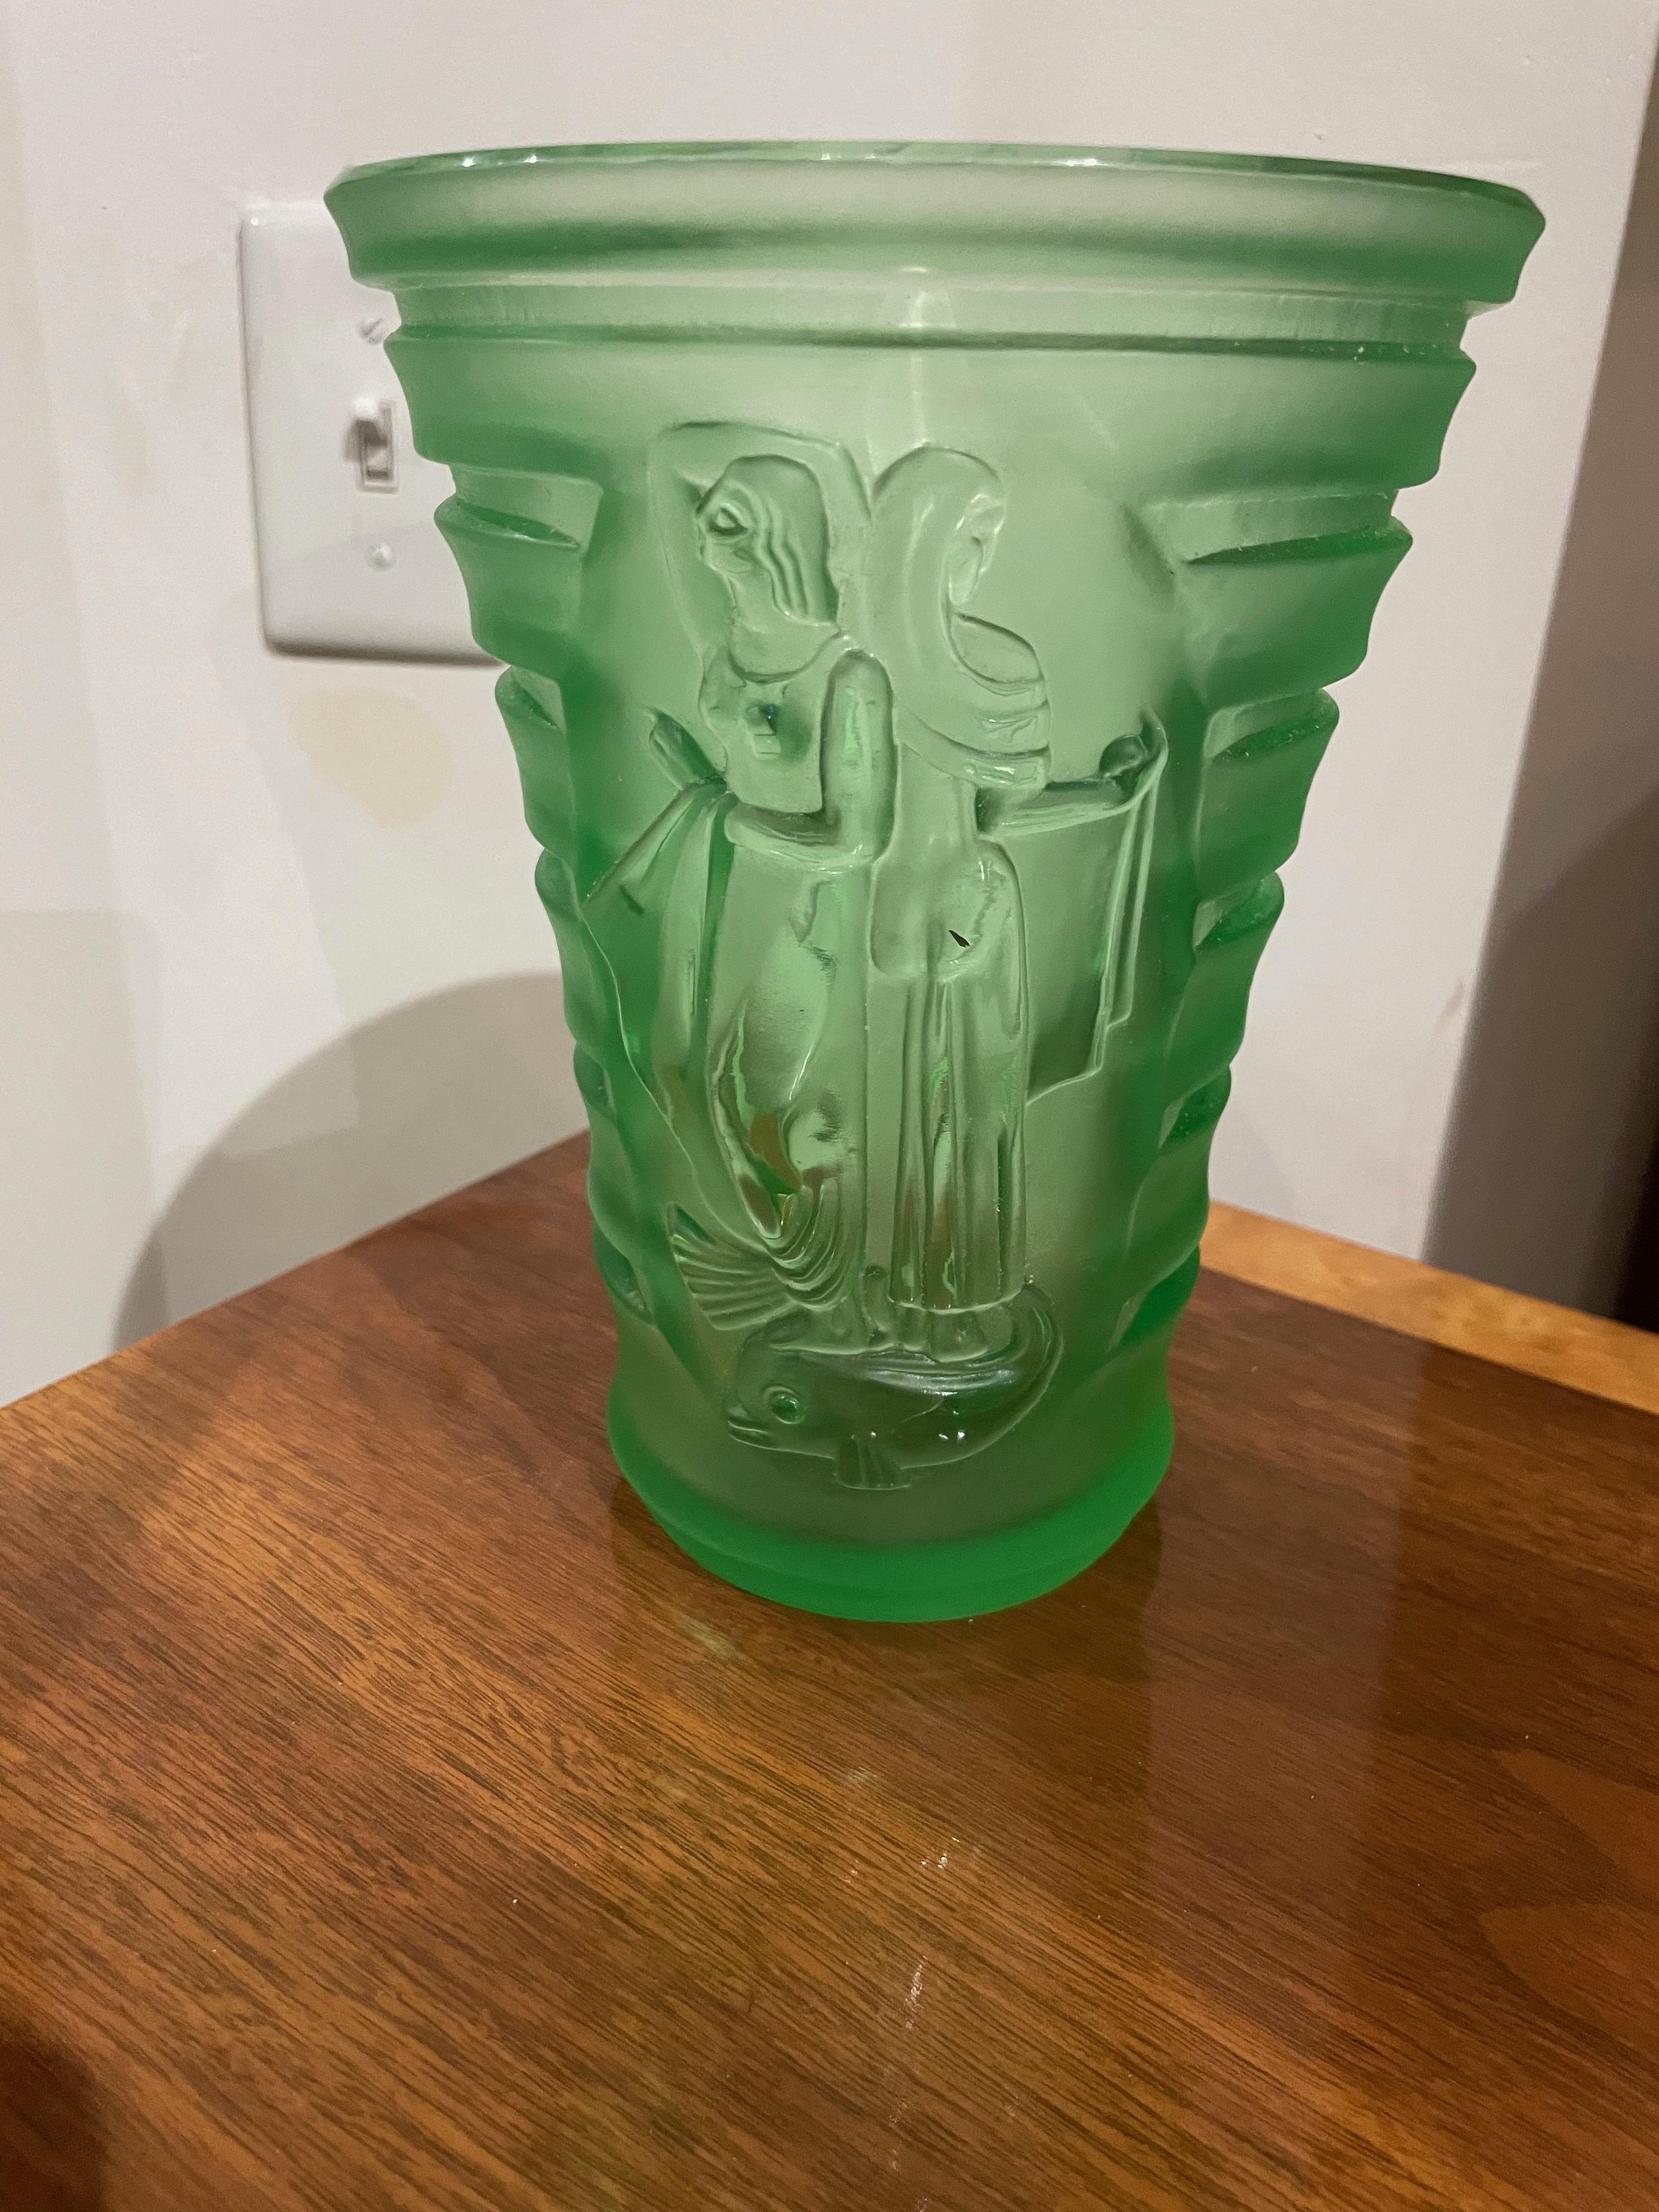 Vase Art Déco en verre vert sculpté avec femme et oiseaux. Un vase rare et unique avec des sculptures profondes représentant des femmes et des oiseaux stylisés de style art déco. Ce joli vase lourd conviendrait parfaitement à des fleurs ou à une